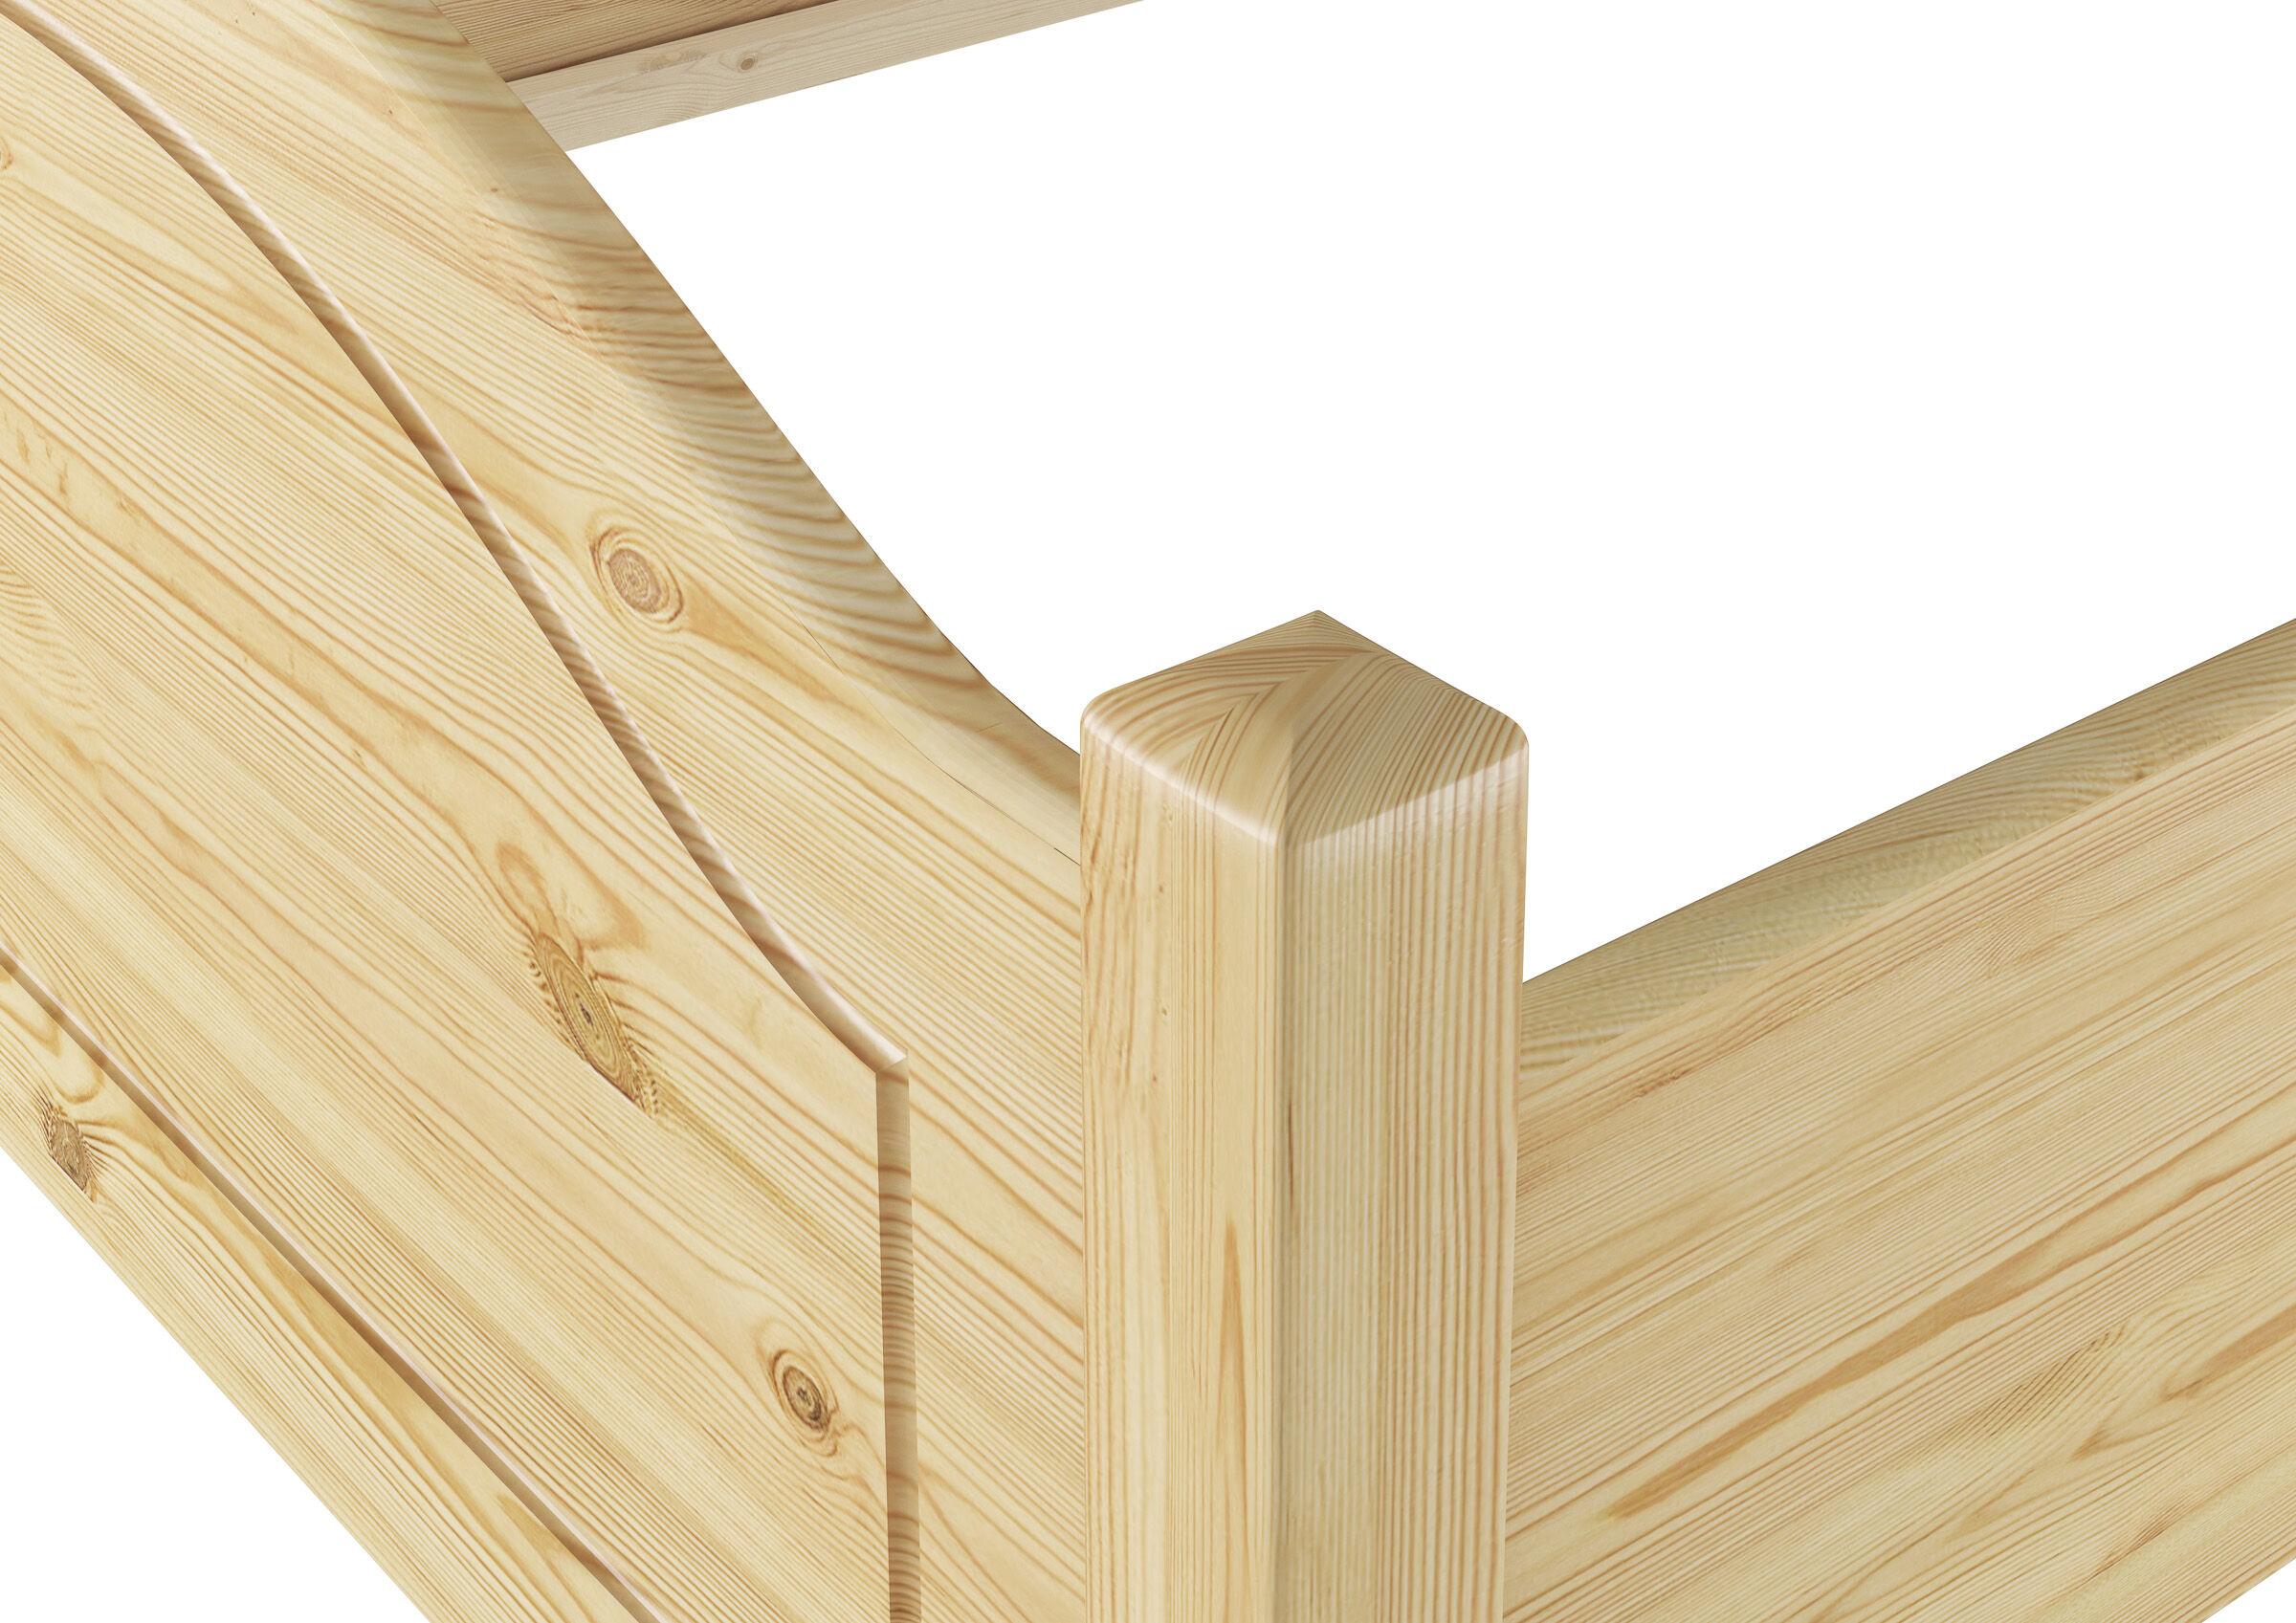 Sette varianti di solido letto in legno Pino massello 90x200 anche per adulti  V-60.30-09